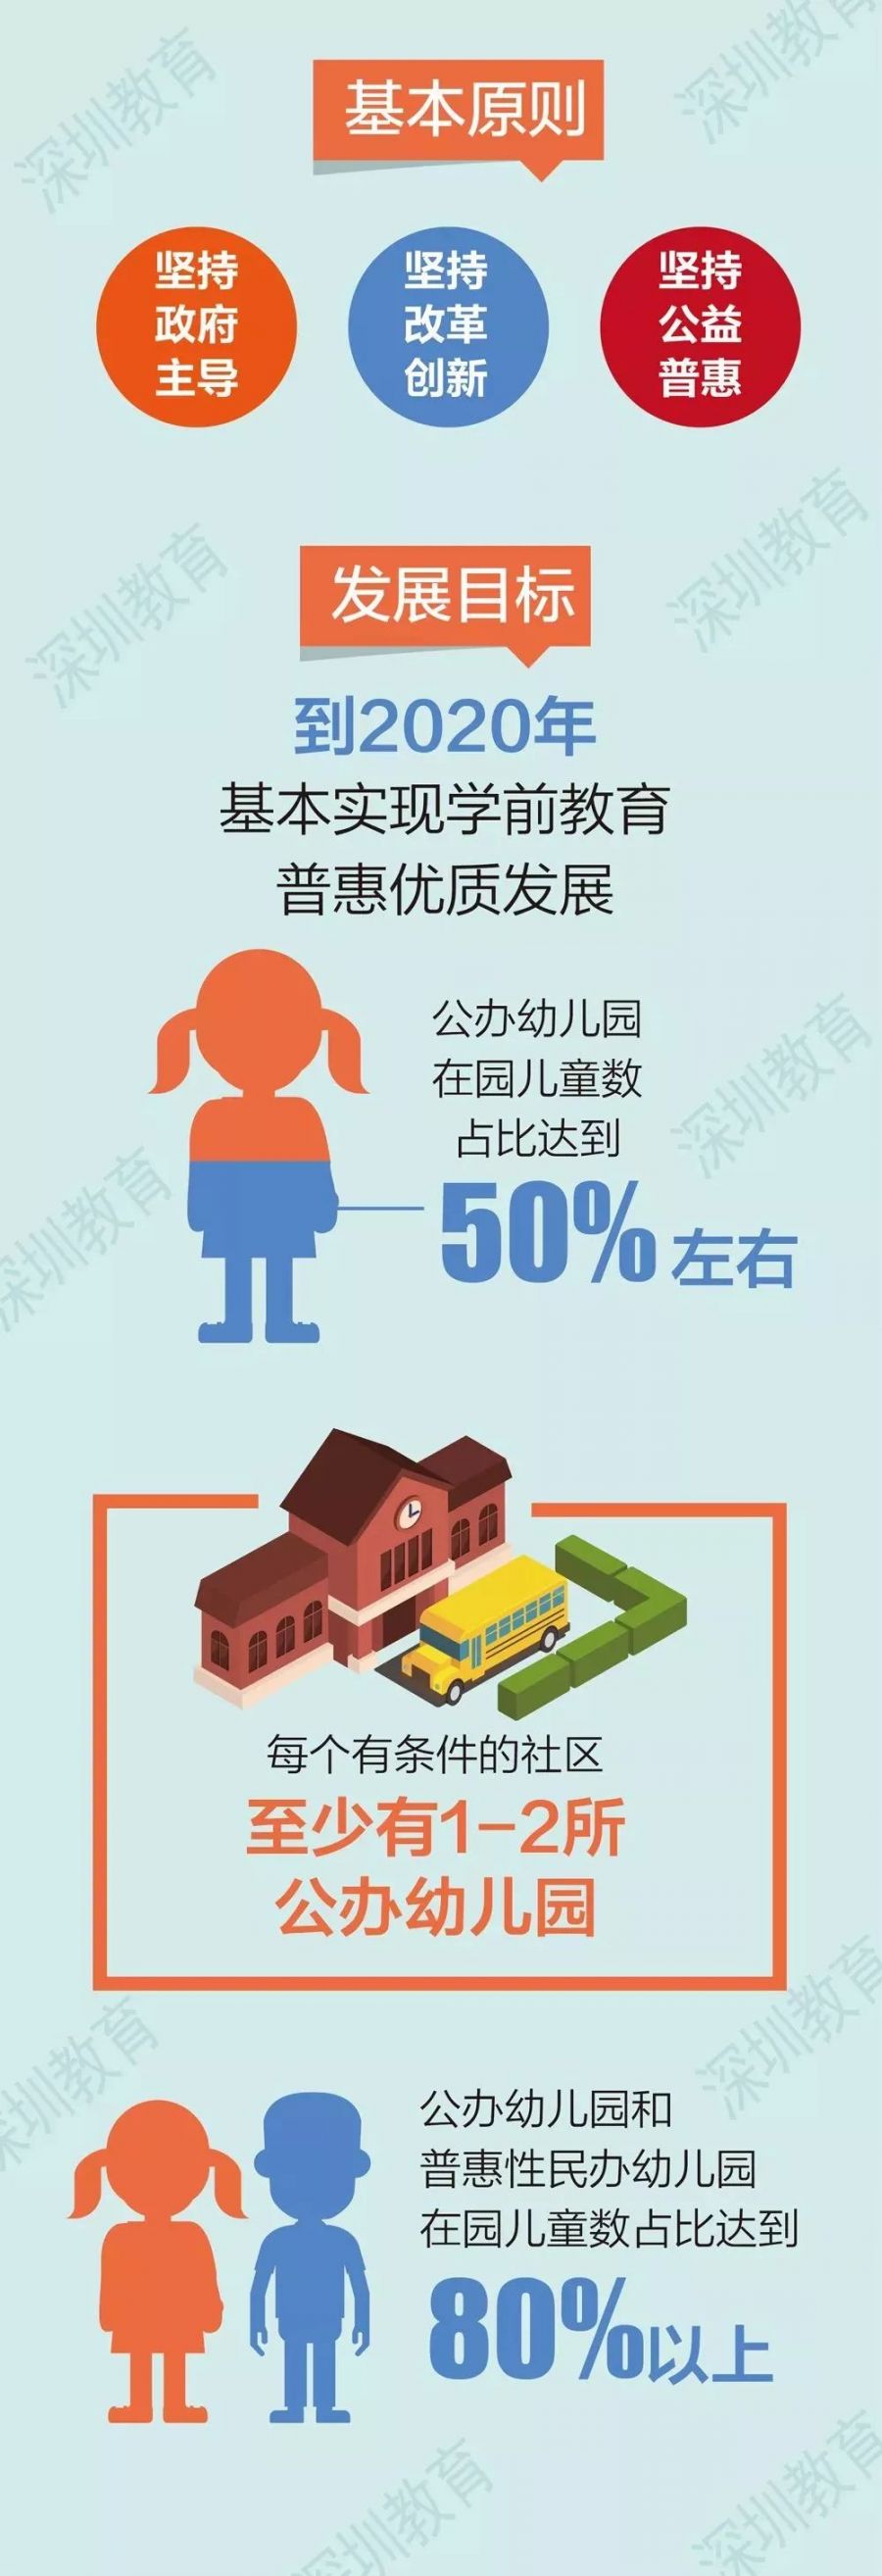 到2020年 深圳要有一半左右的孩子能上公办园